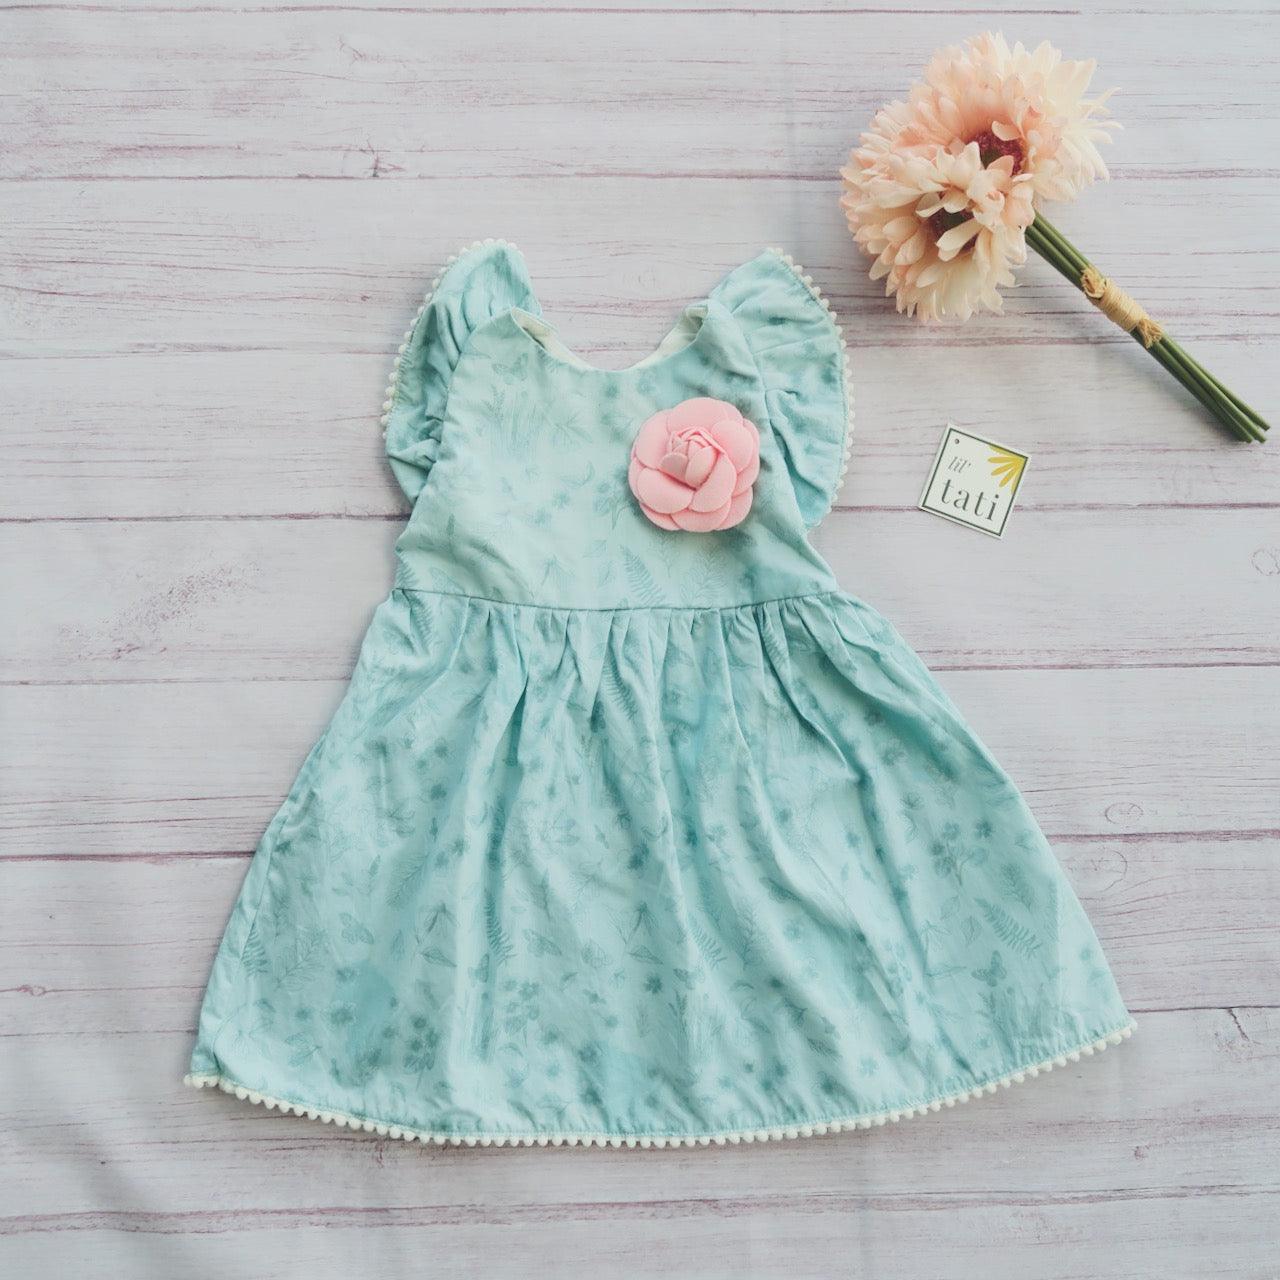 Periwinkle Dress in Green Flowers Print - Lil' Tati